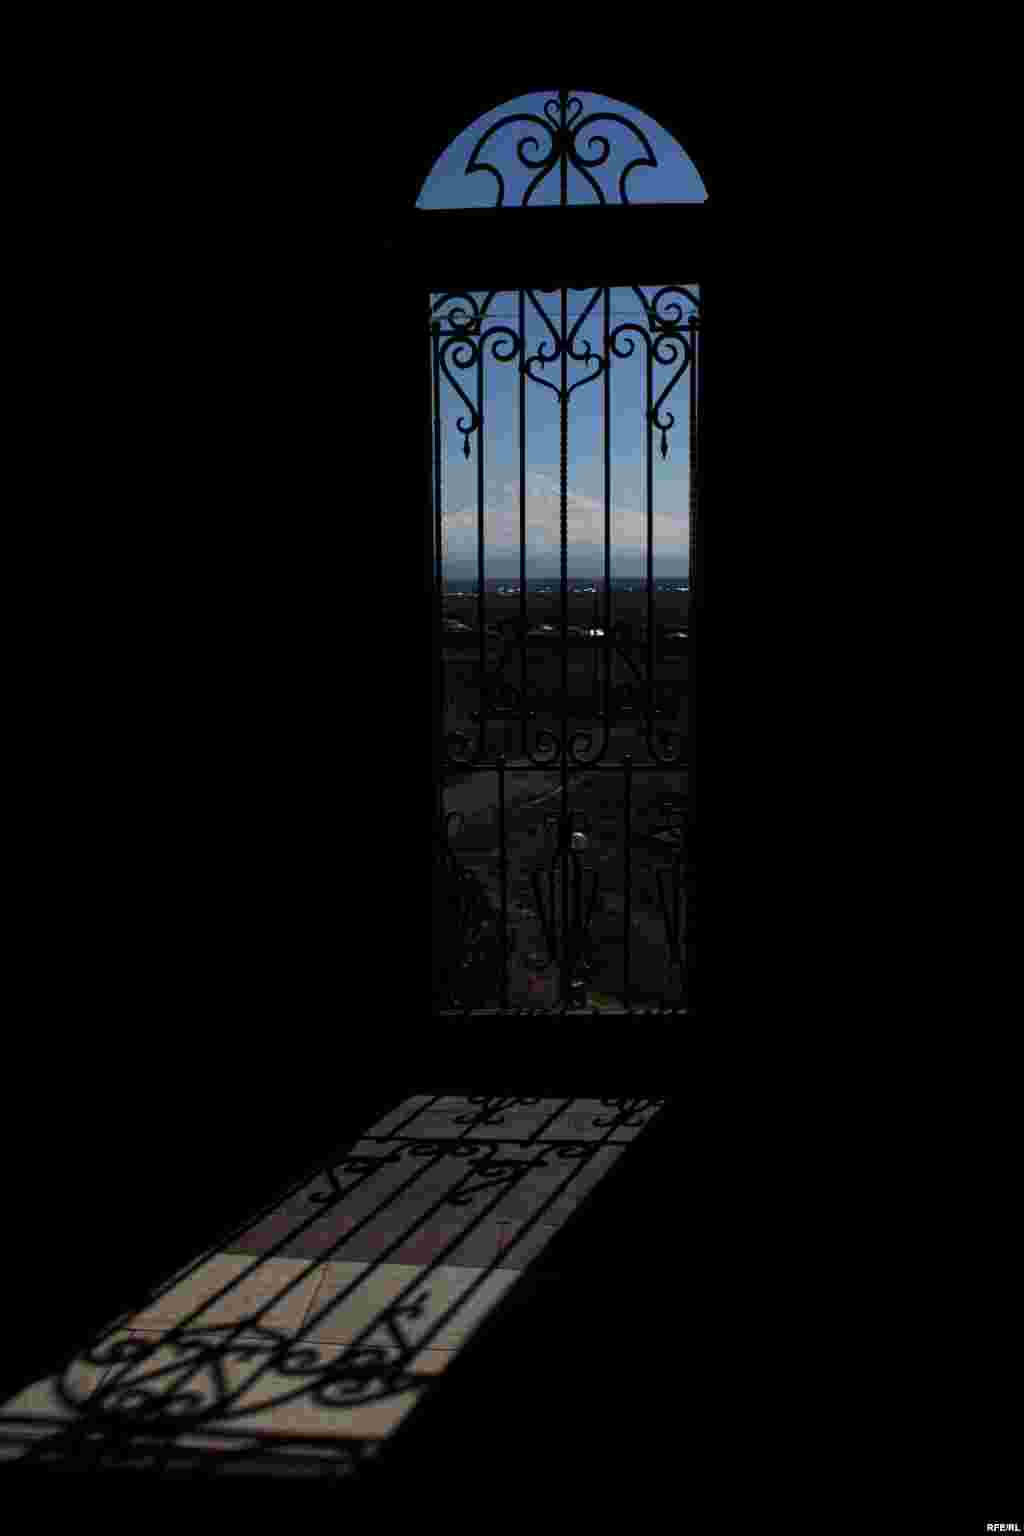 Մասիսին նայող պատուհան, Ազգագրության թանգարան